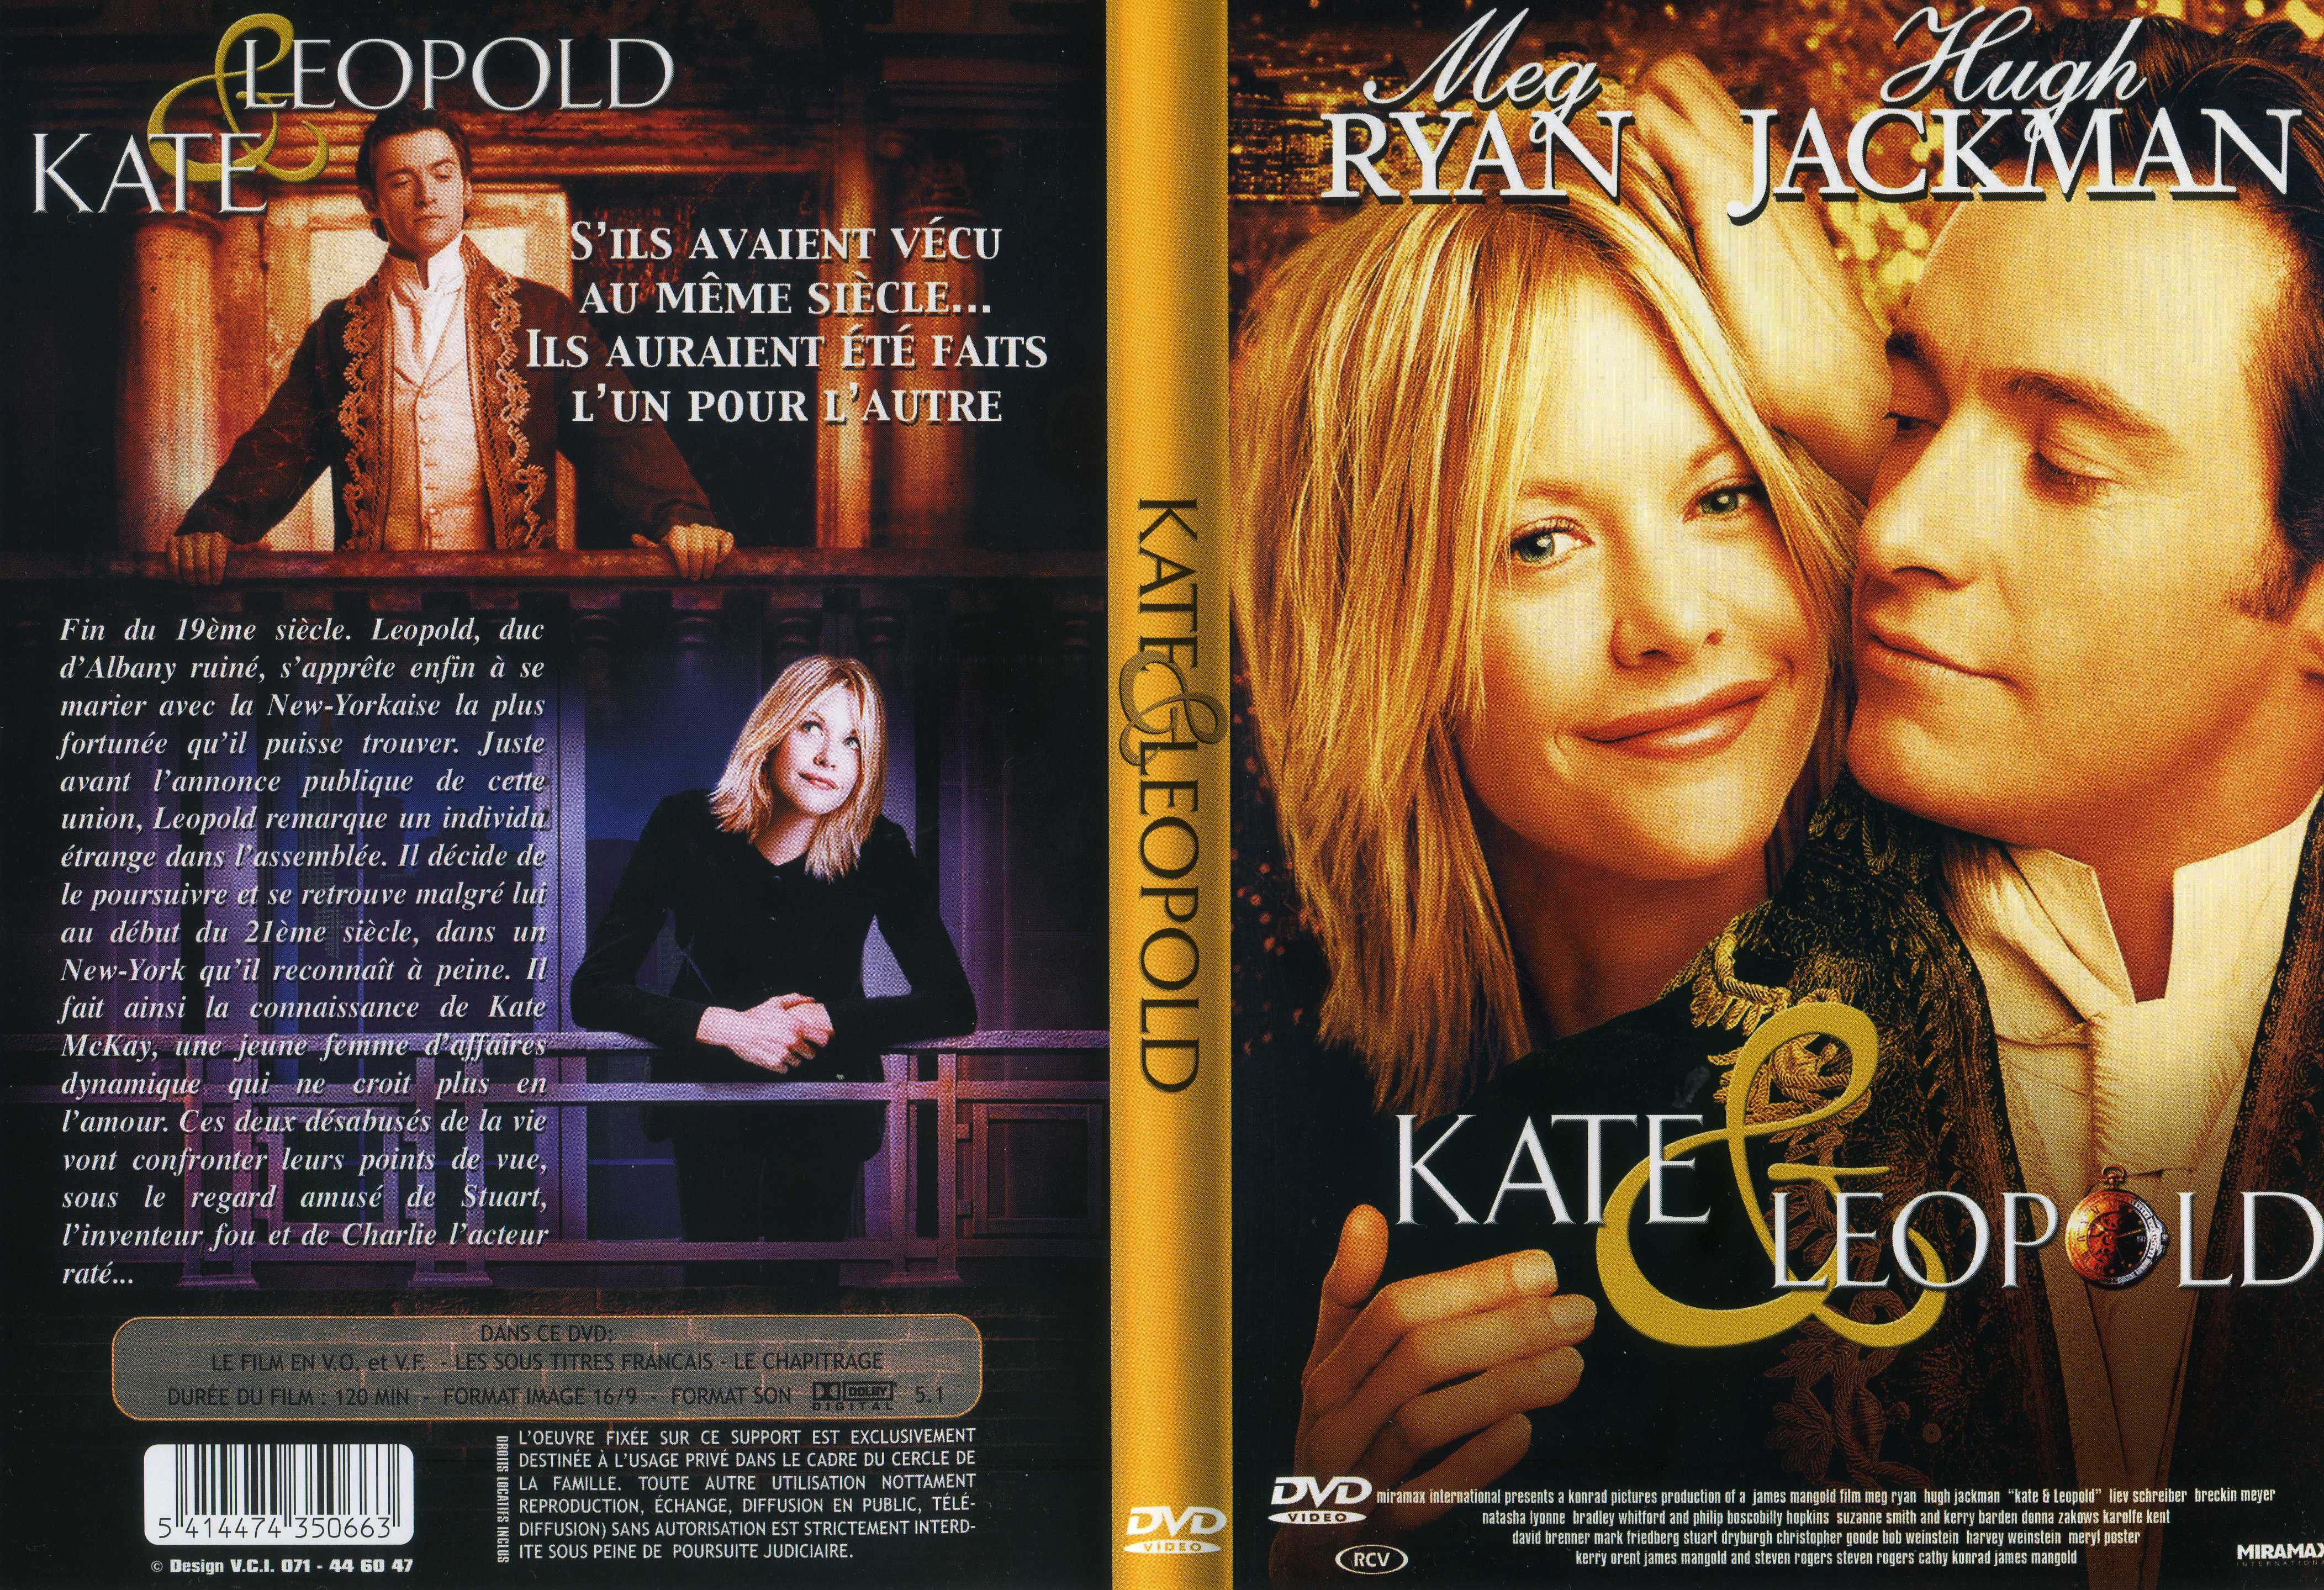 Jaquette DVD Kate et Leopold v2